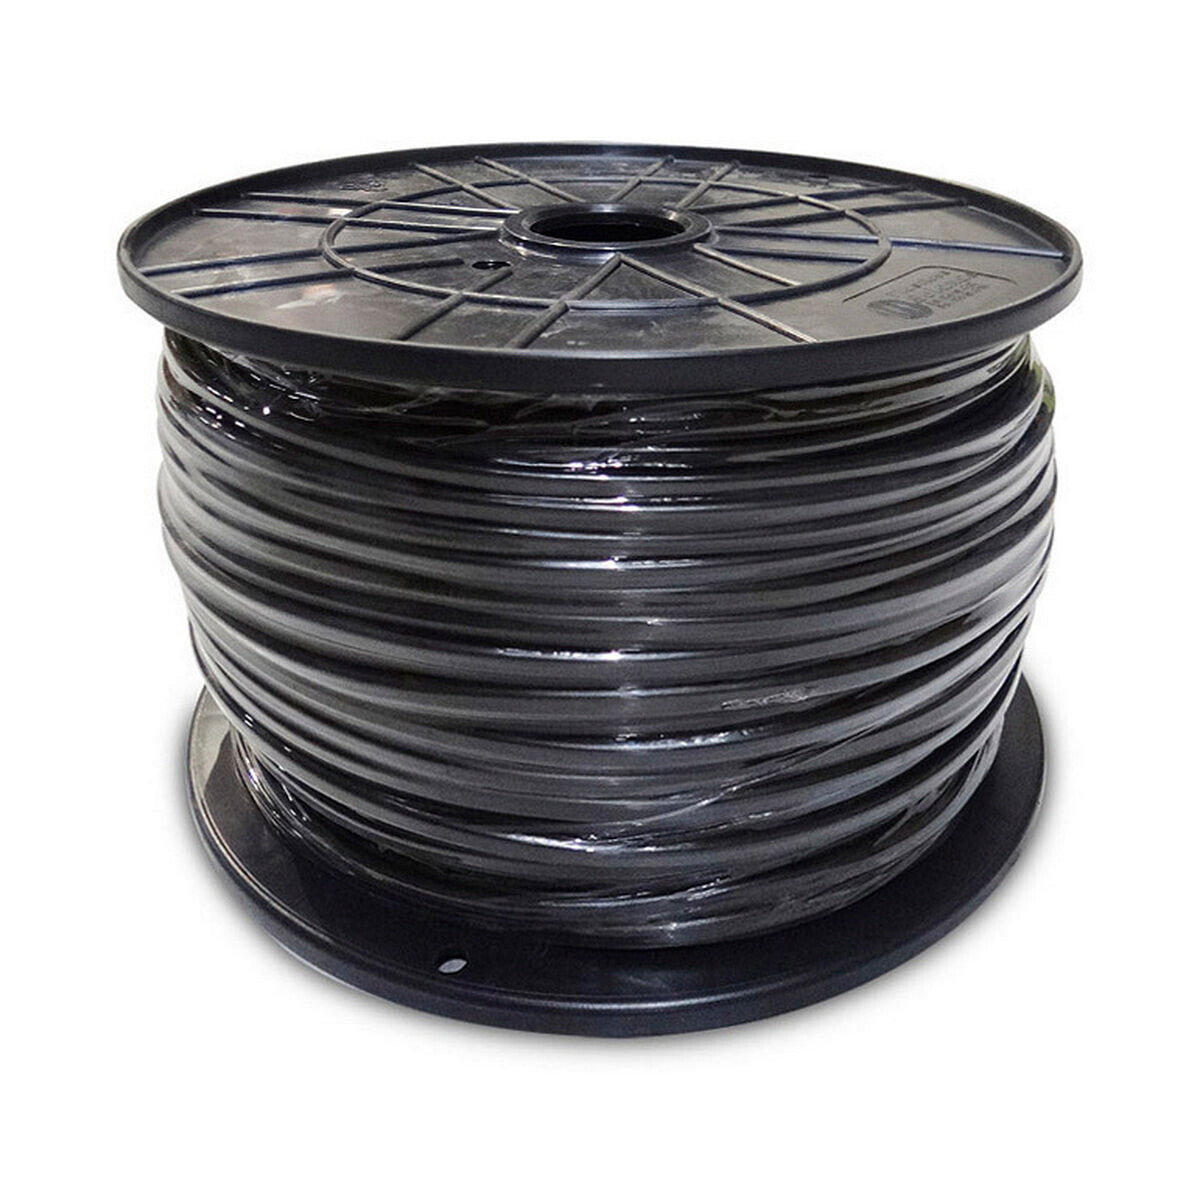 Cable Sediles 2 x 1,5 mm Black 400 m Ø 400 x 200 mm